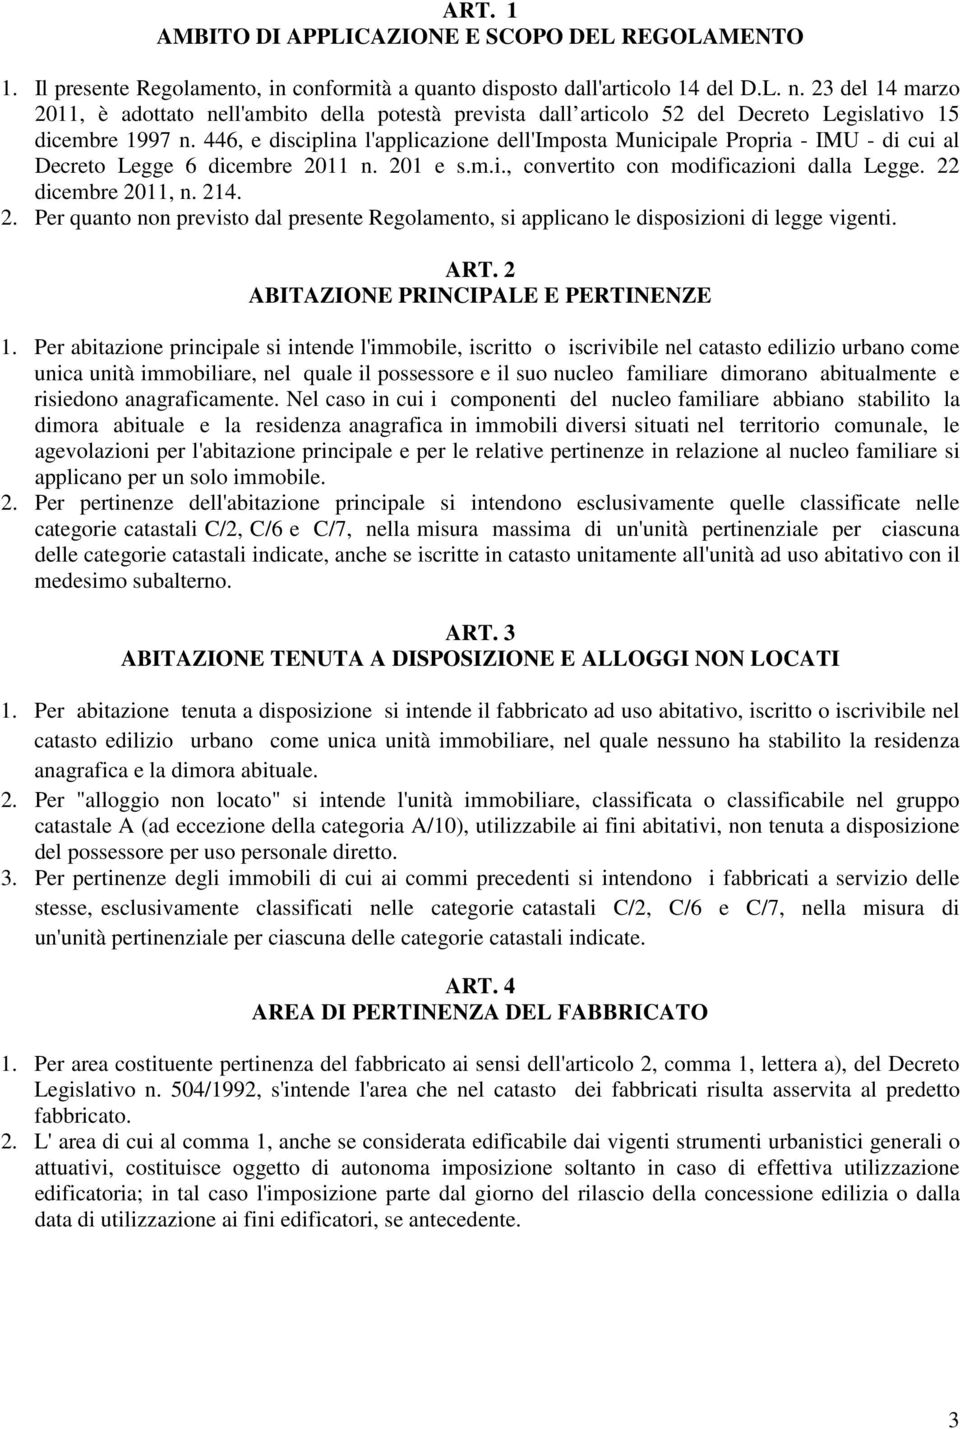 446, e disciplina l'applicazione dell'imposta Municipale Propria - IMU - di cui al Decreto Legge 6 dicembre 20